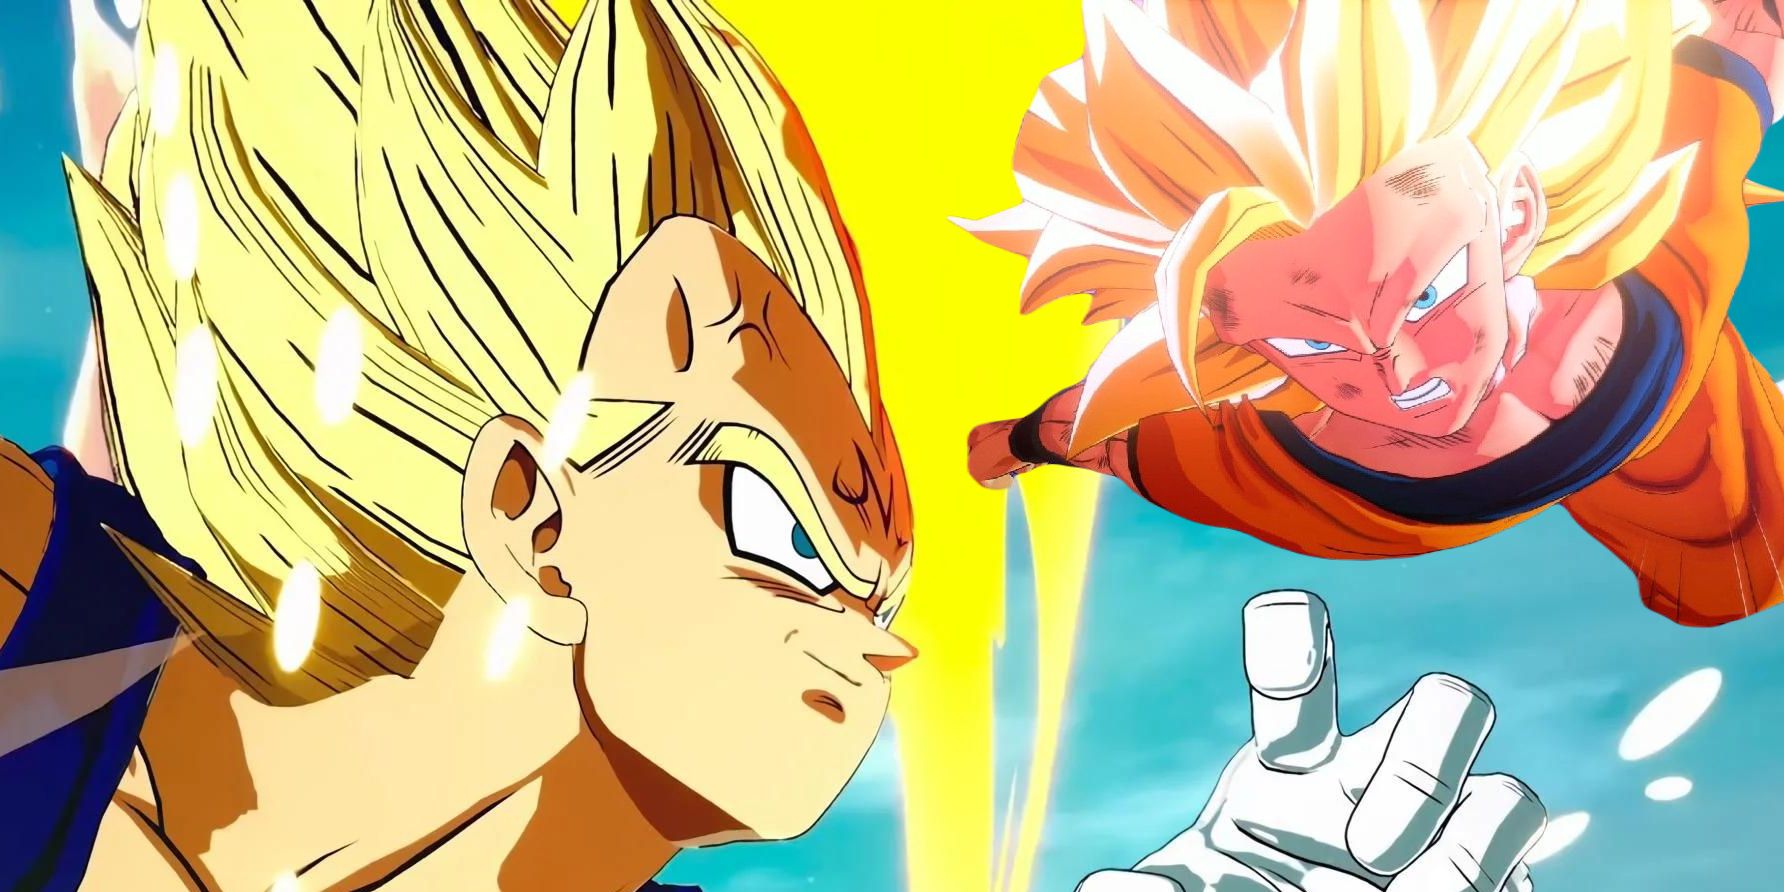 Goku from DBZ Kakarot and Vegeta from DBZ Sparking Zero.